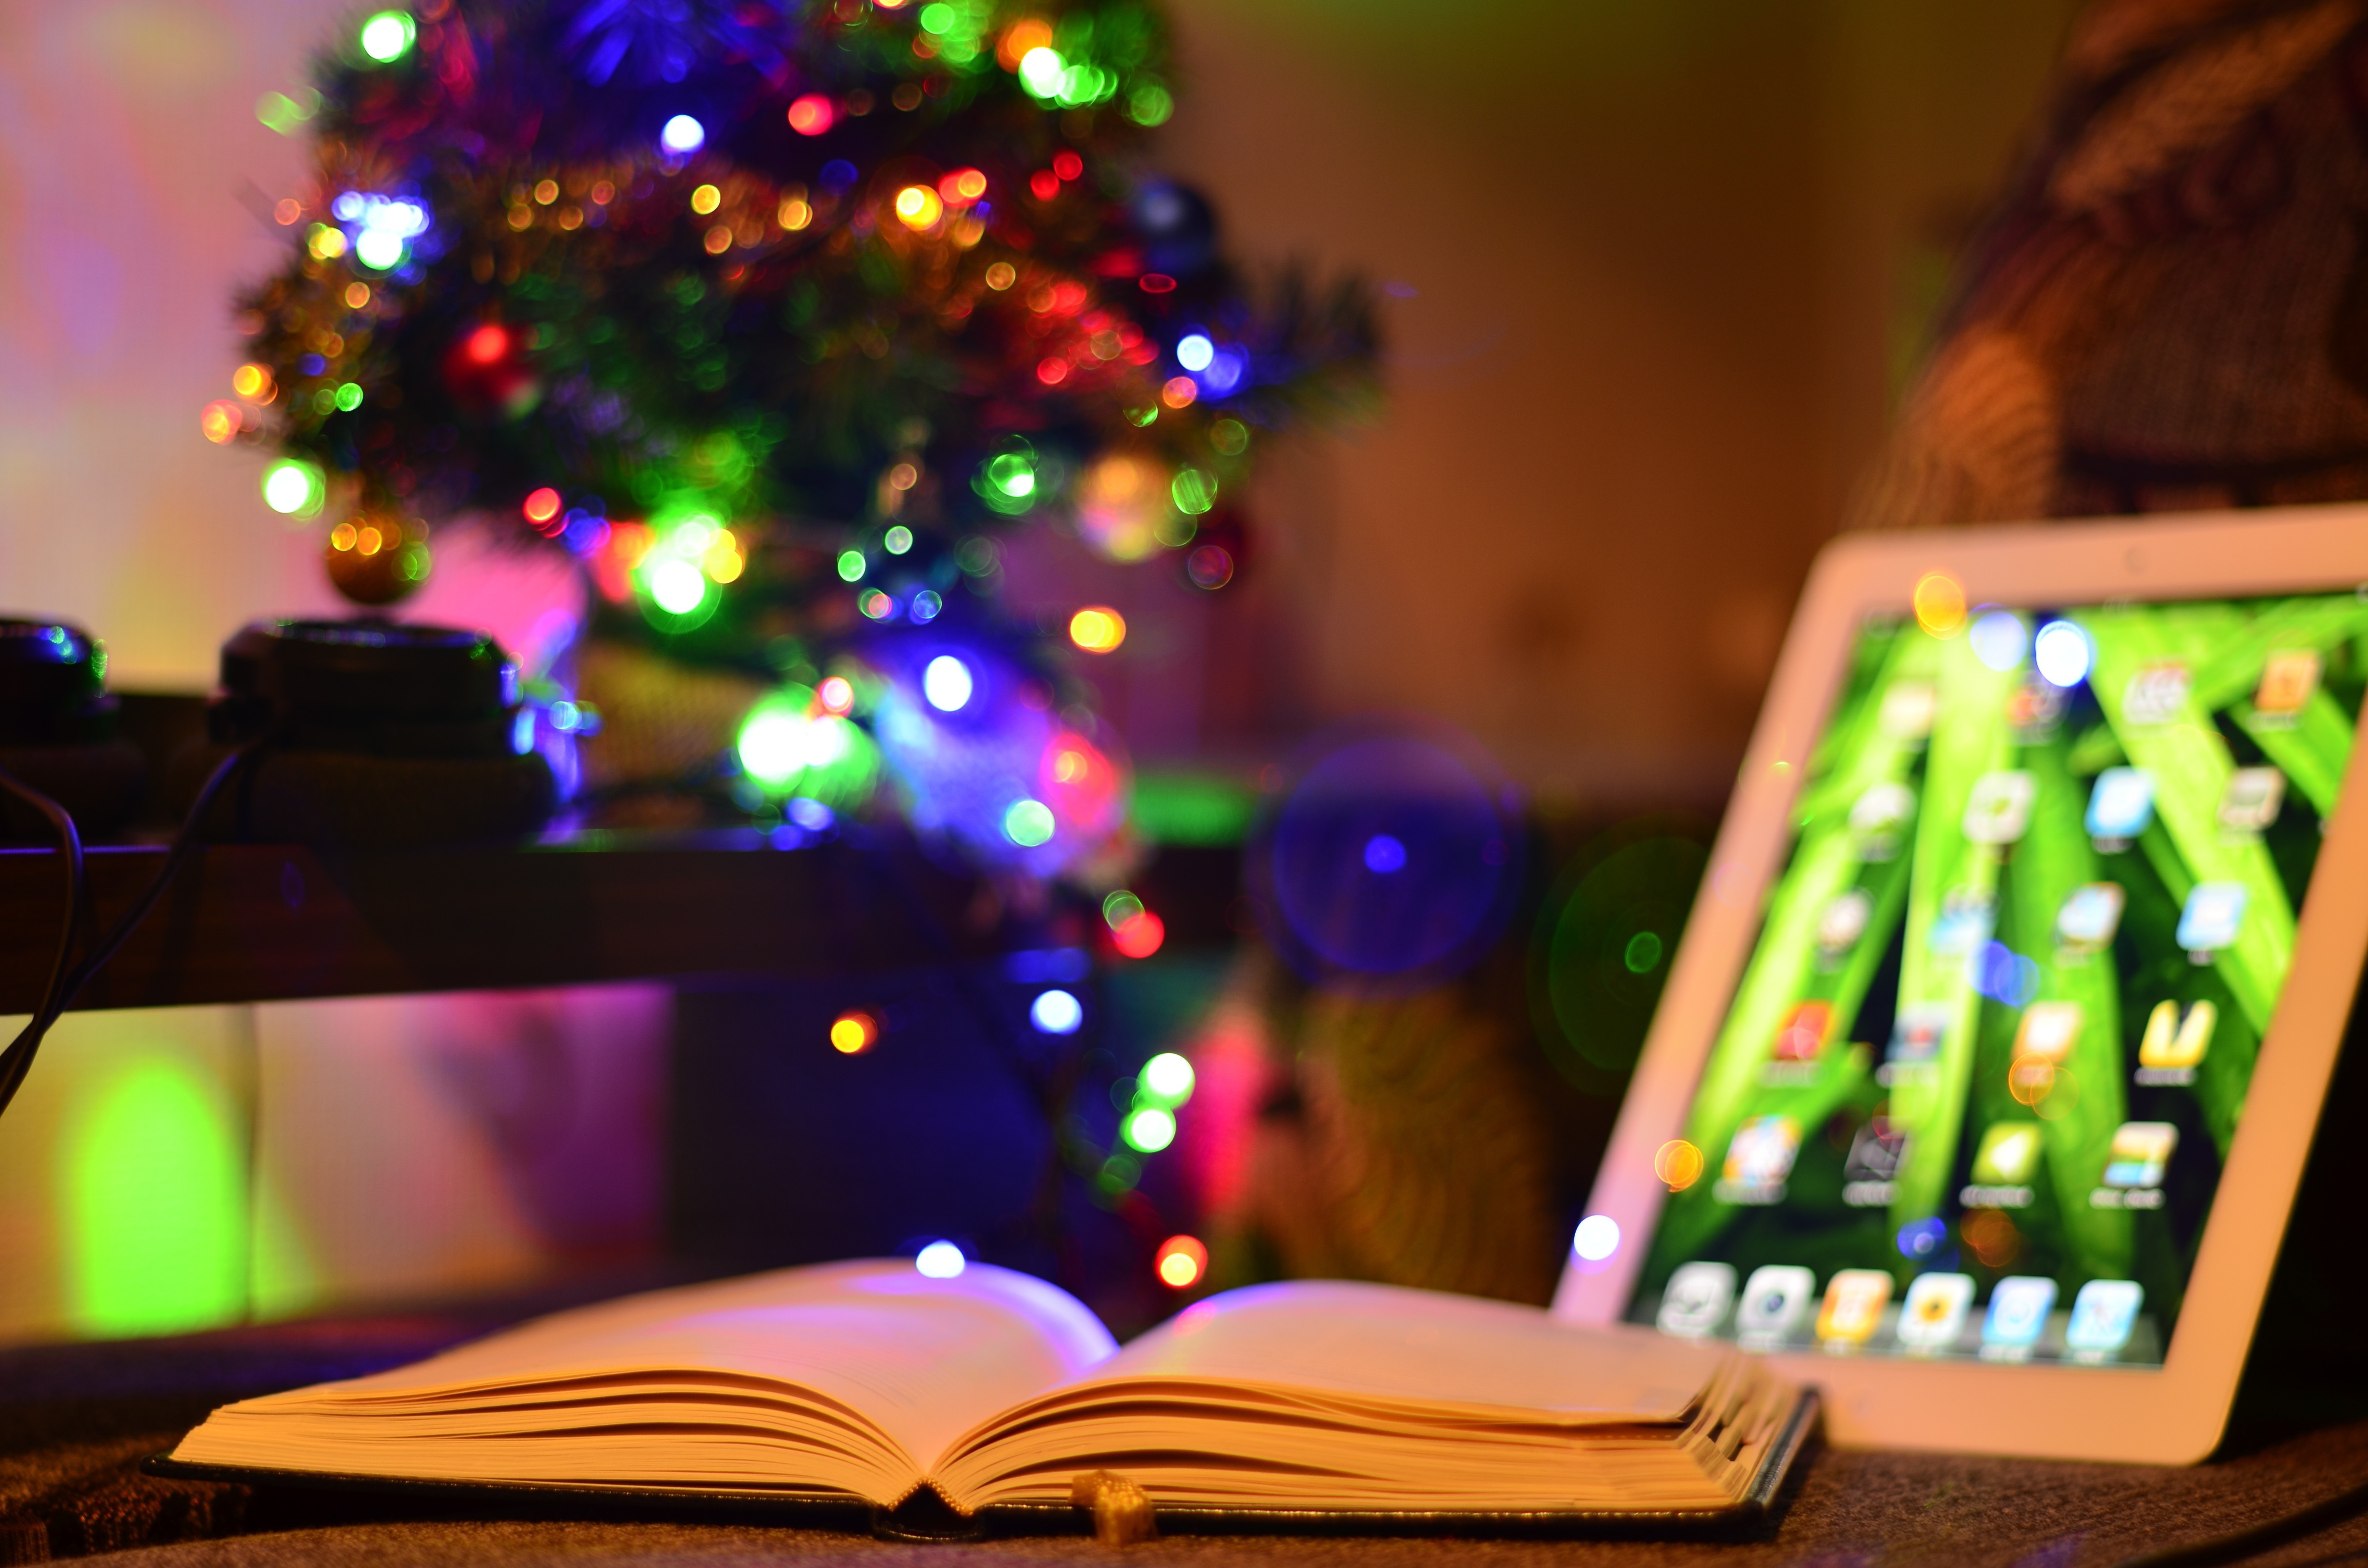 iPad, Christmas, Christmas Lights, Books, Bokeh, Depth Of Field